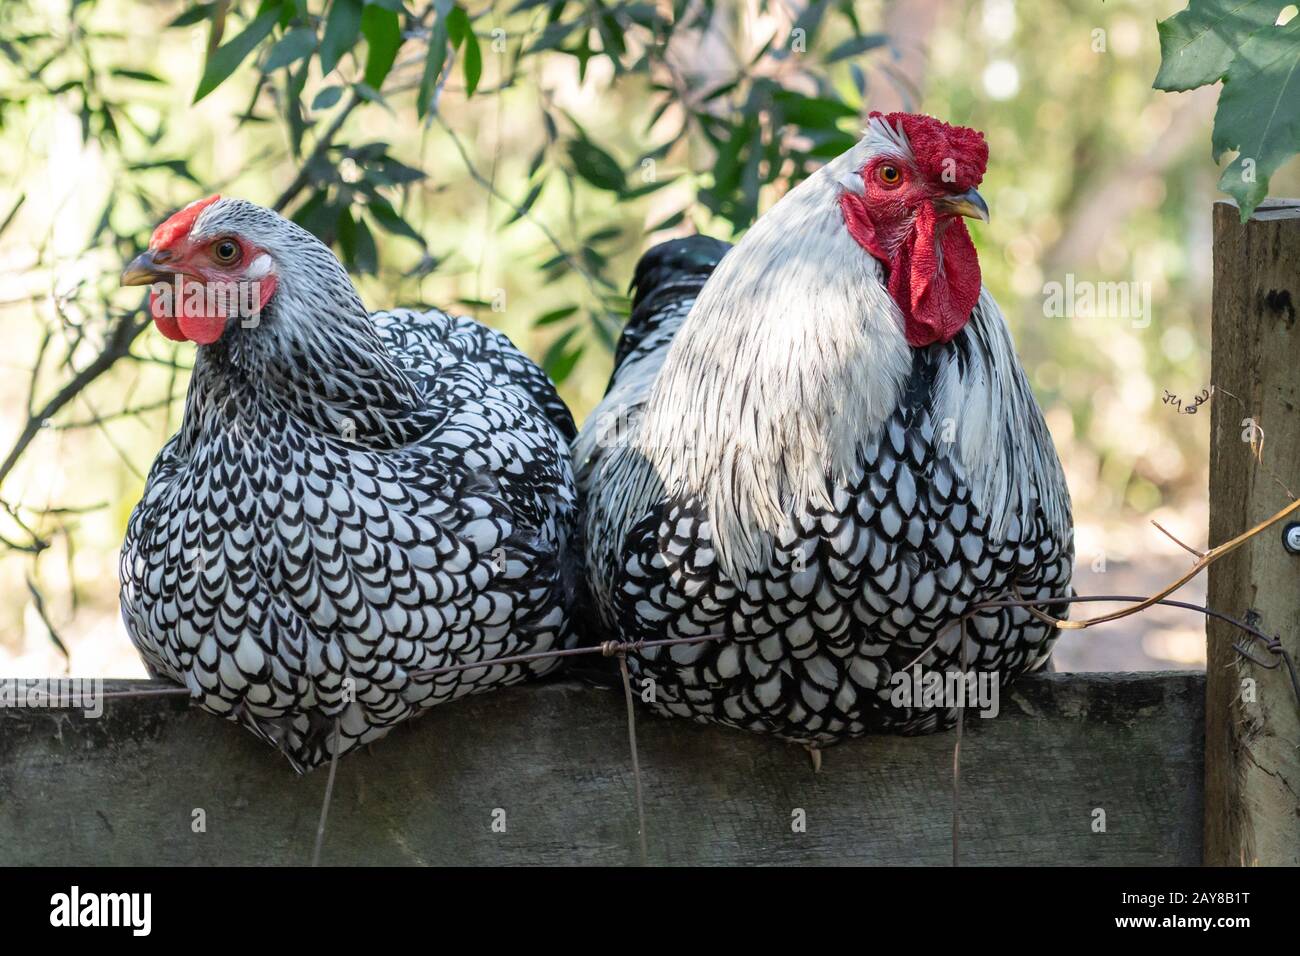 Seduto sulla Fence. Due polli seduti su una recinzione in legno Foto Stock